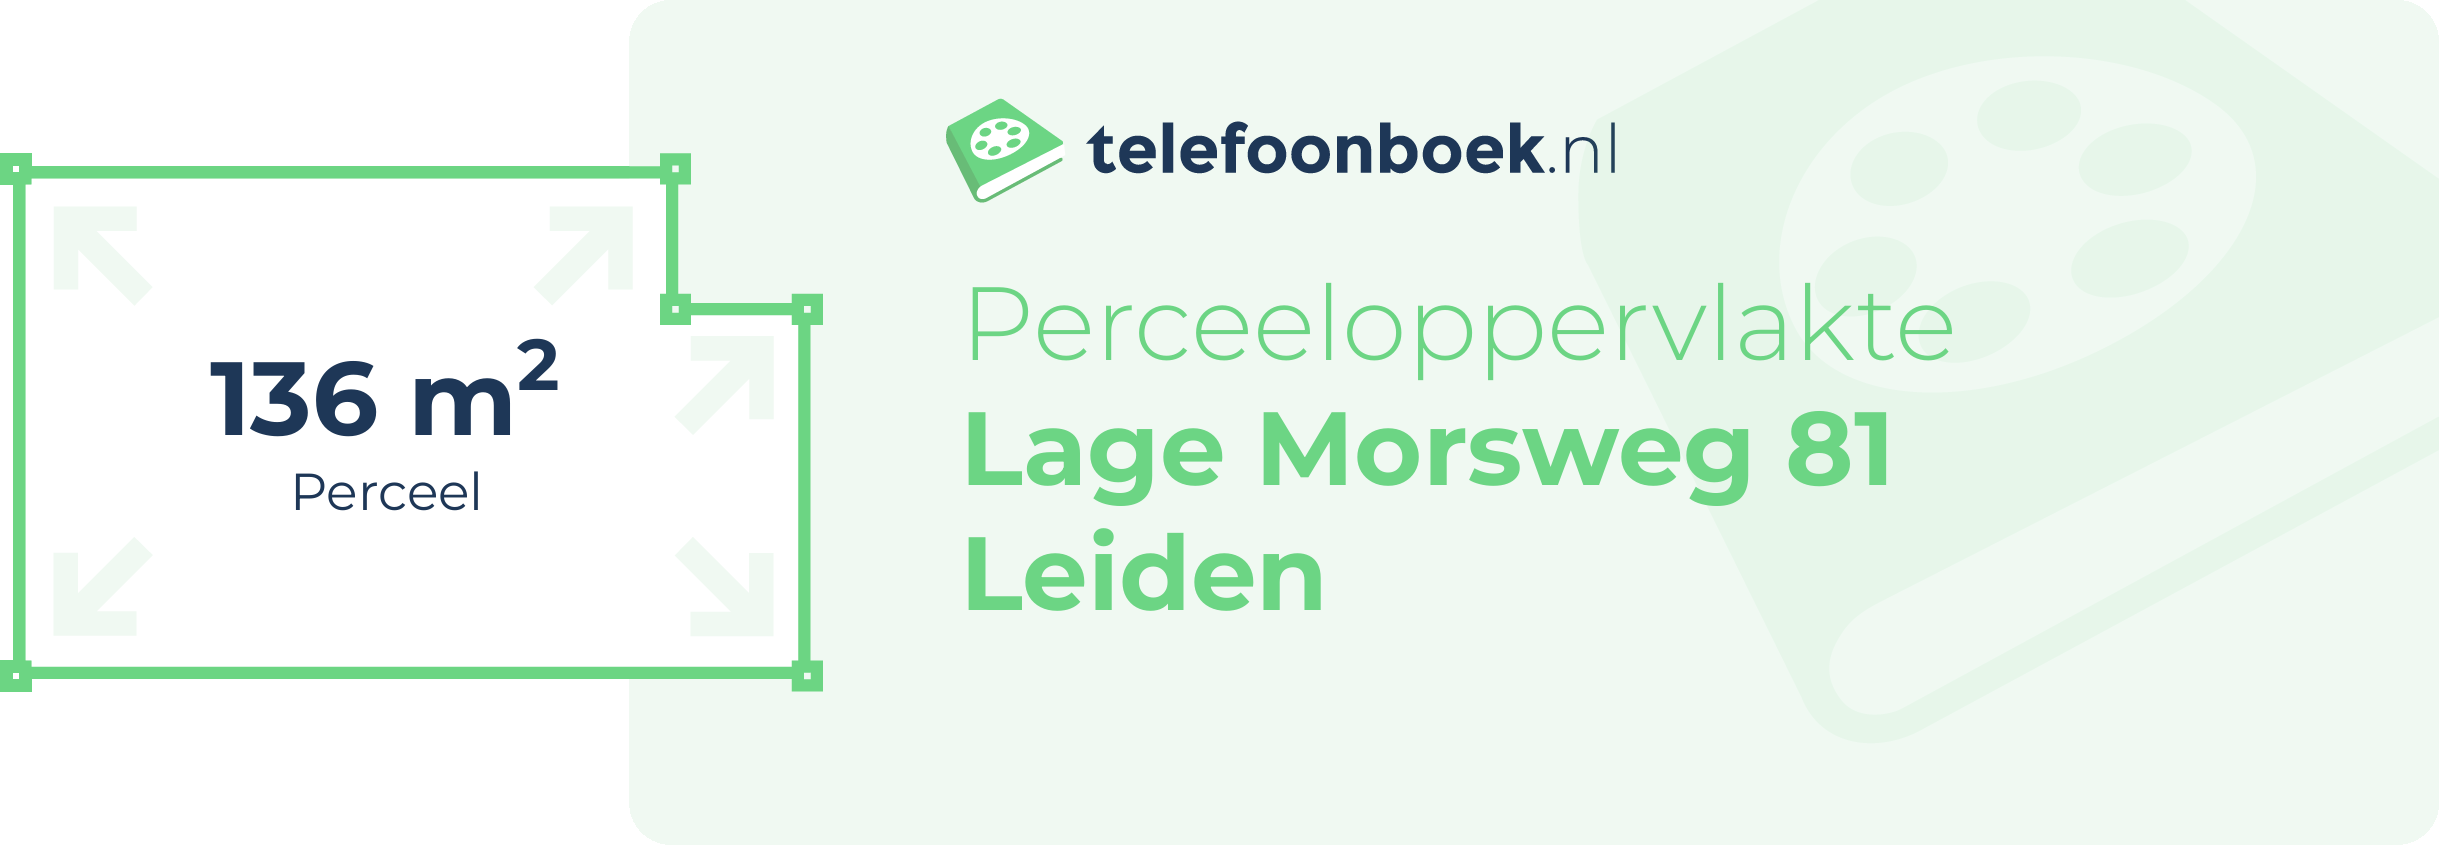 Perceeloppervlakte Lage Morsweg 81 Leiden